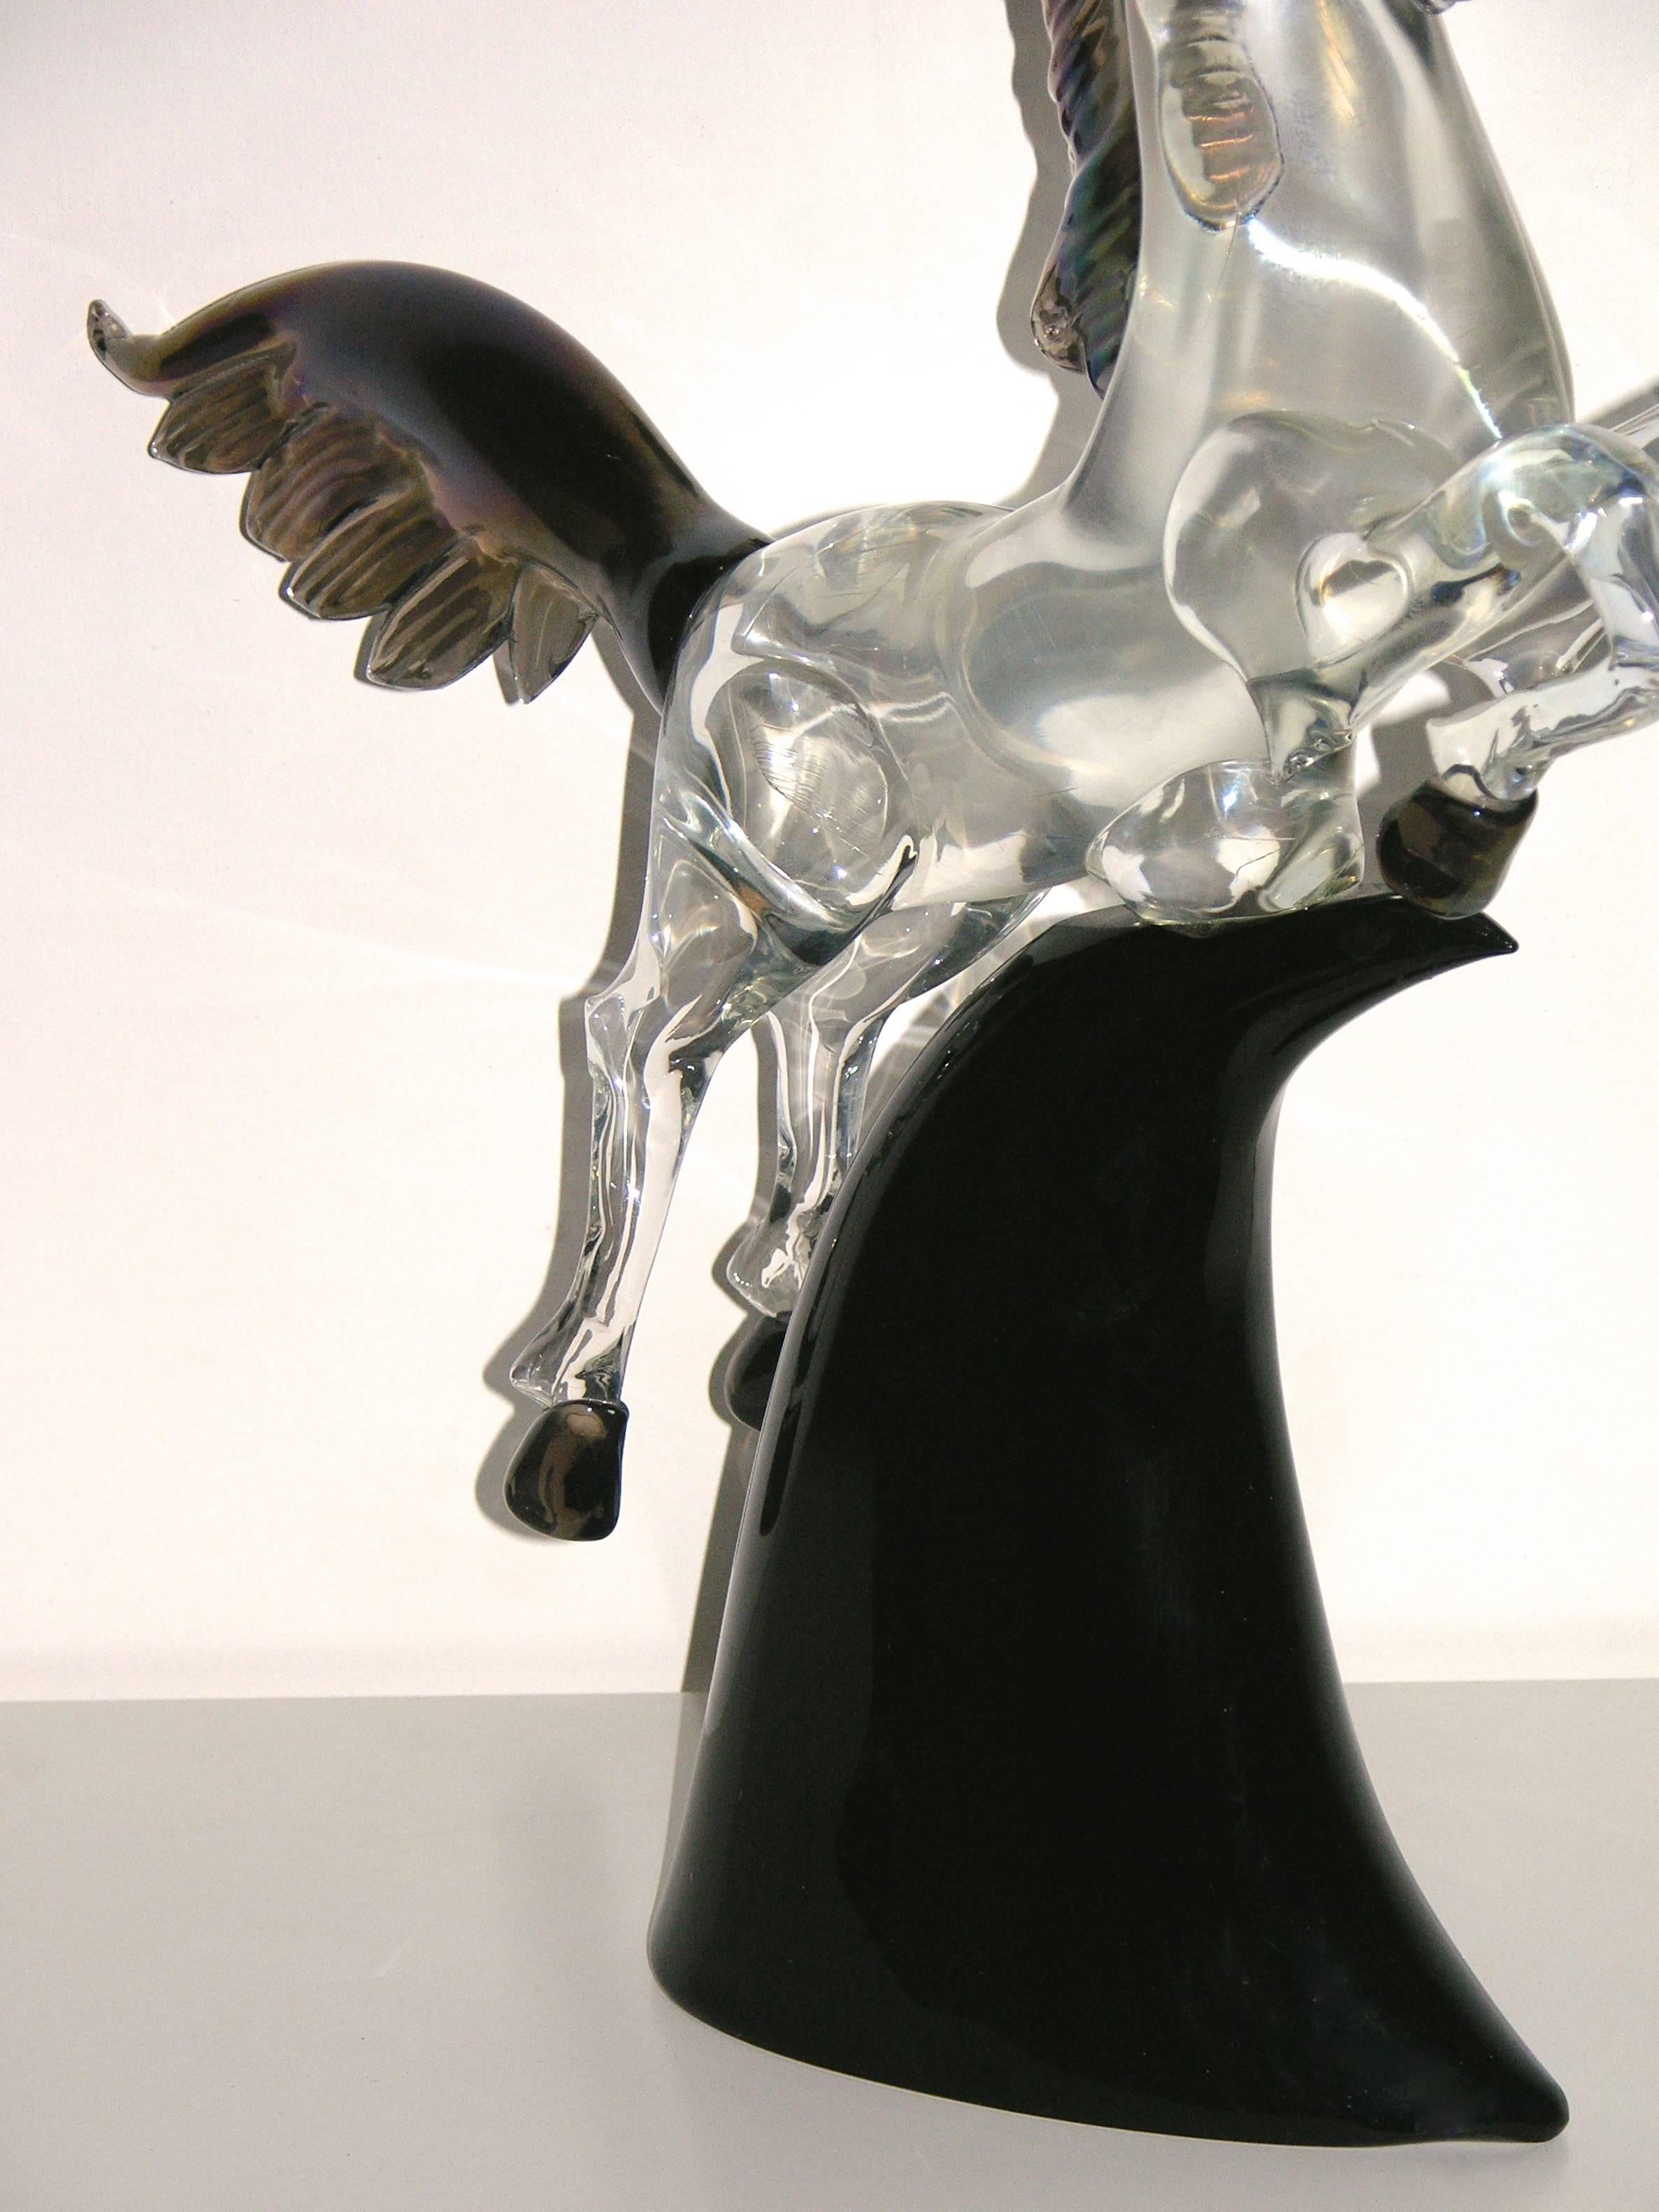 Blown Glass Licio Zanetti 1980 Iridescent Murano Art Glass Horse